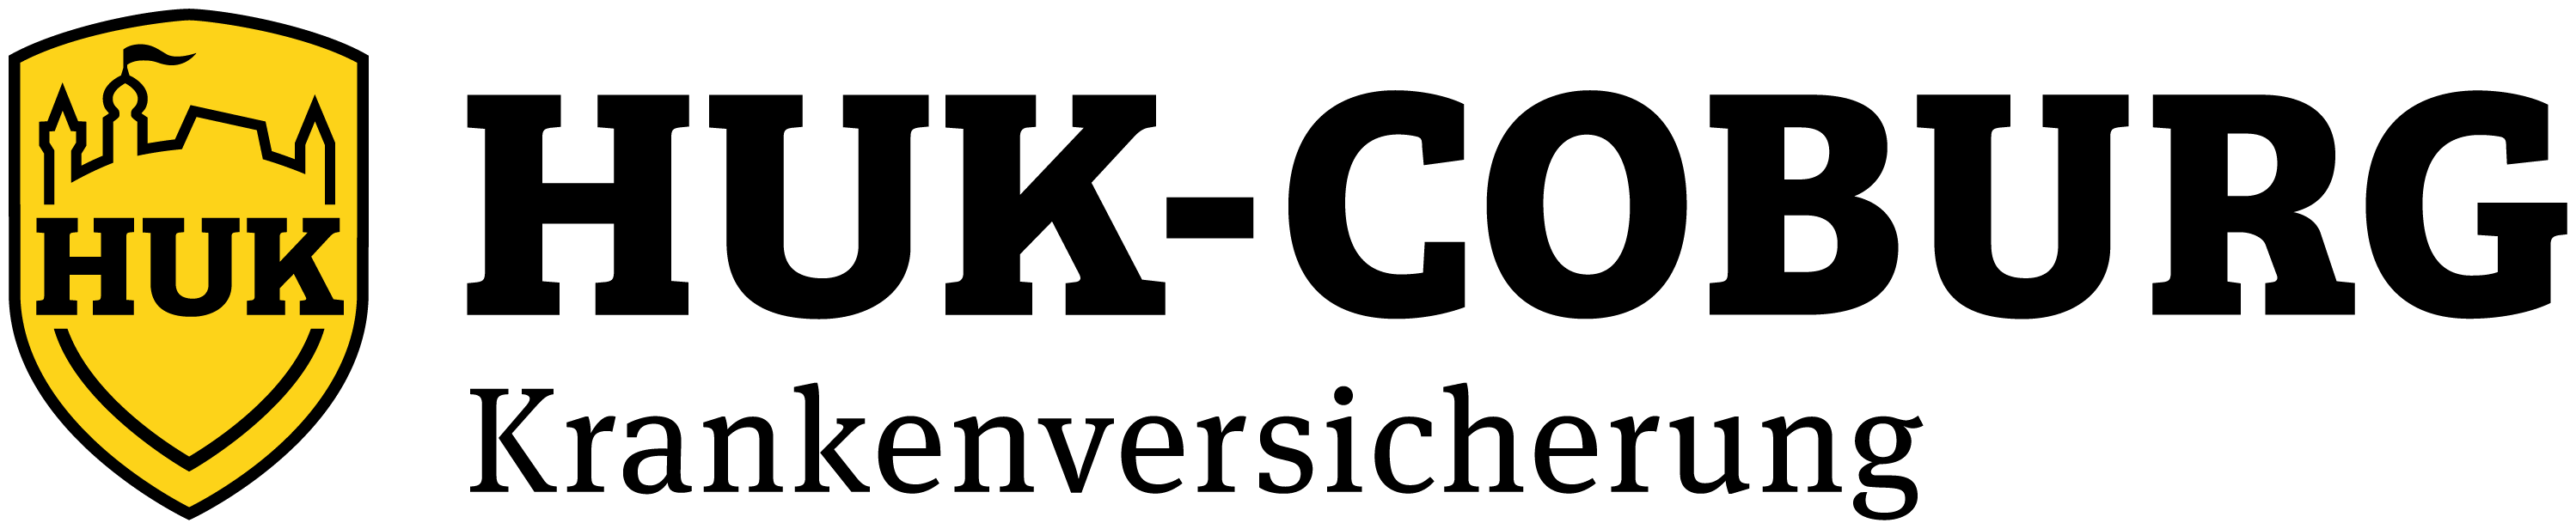 Logo HUK Coburg